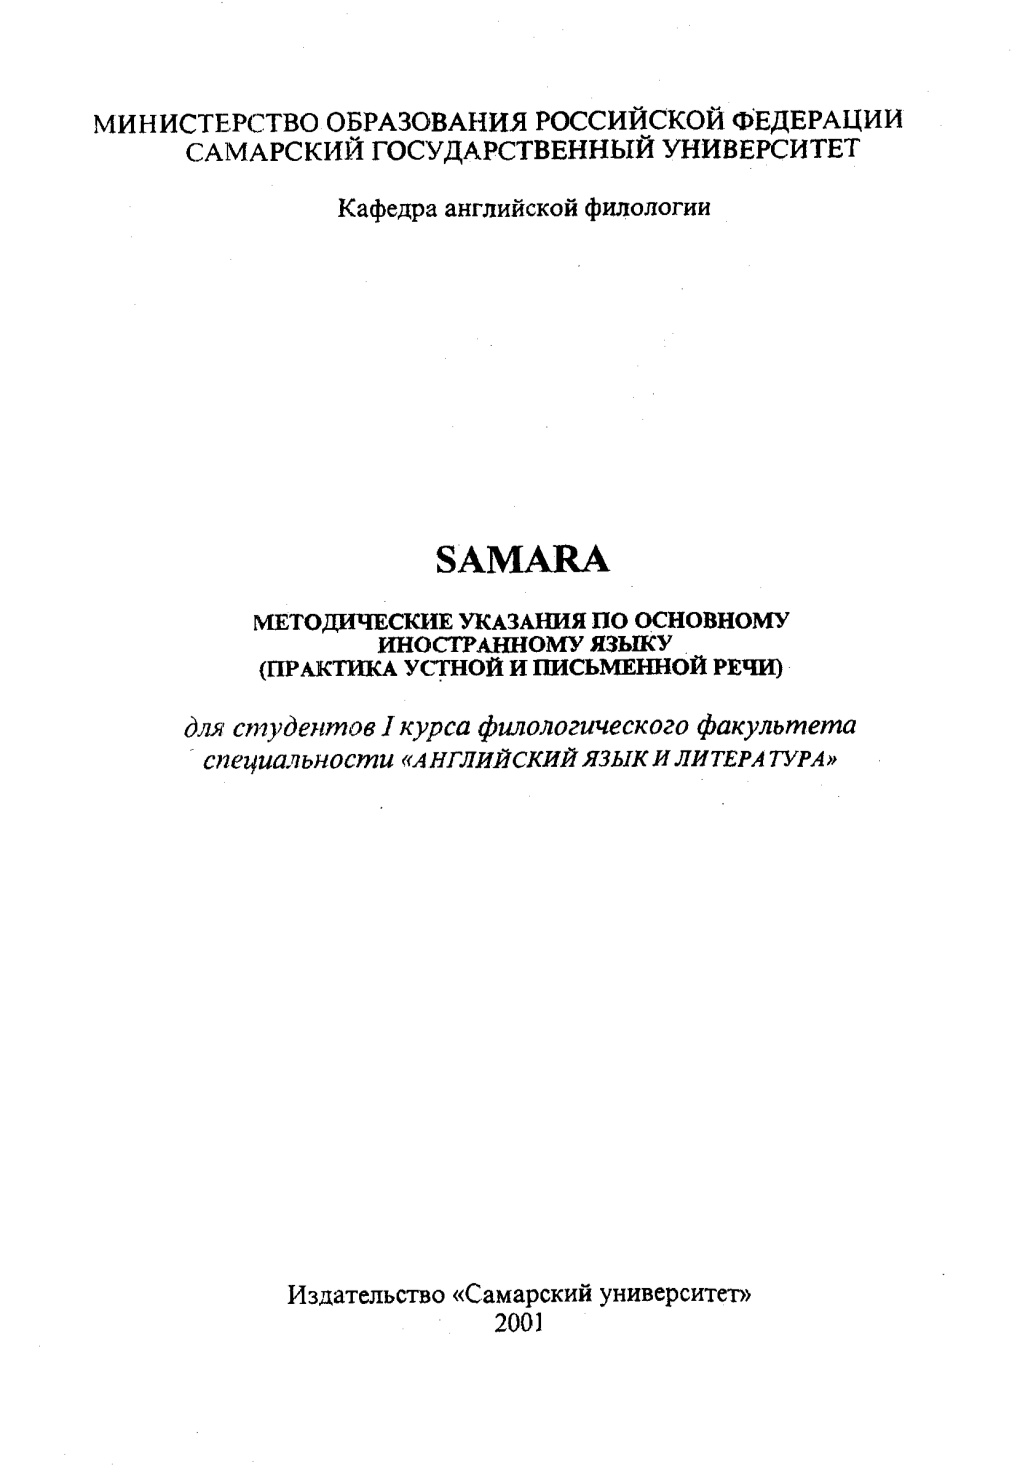 Кашина Е.Г. Samara 2001.Pdf